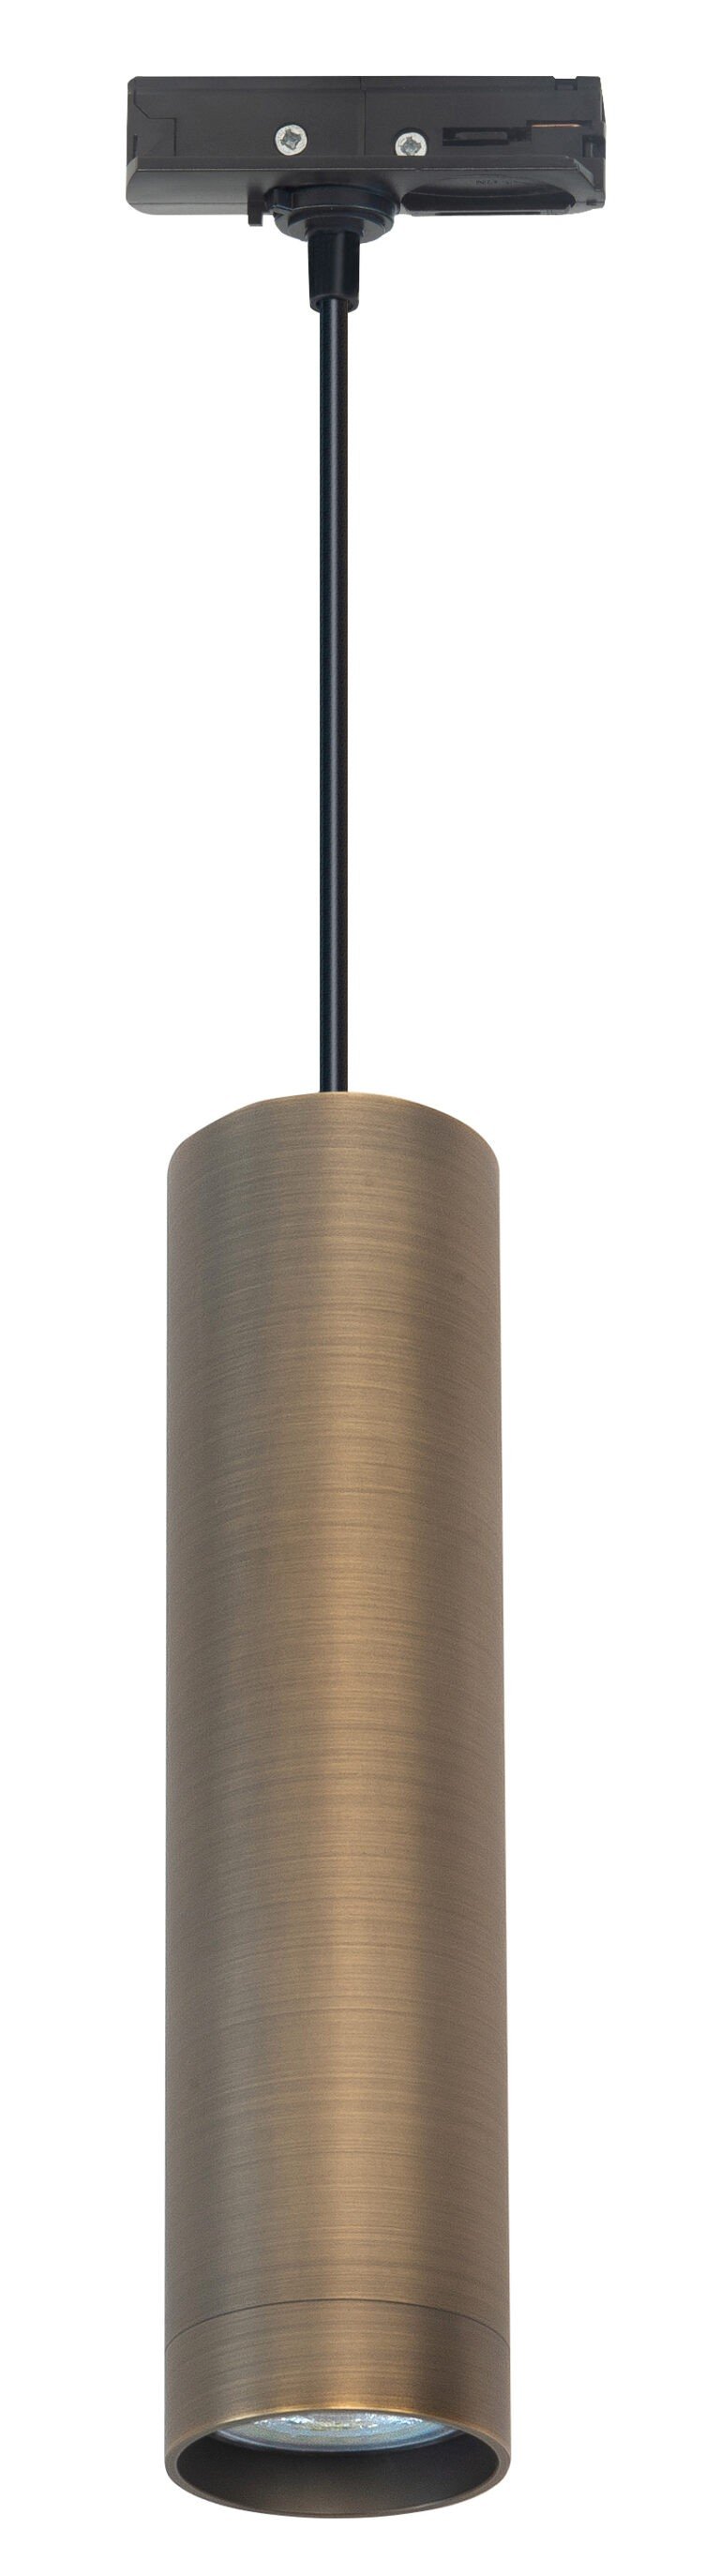 Hanglamp brons met adapter